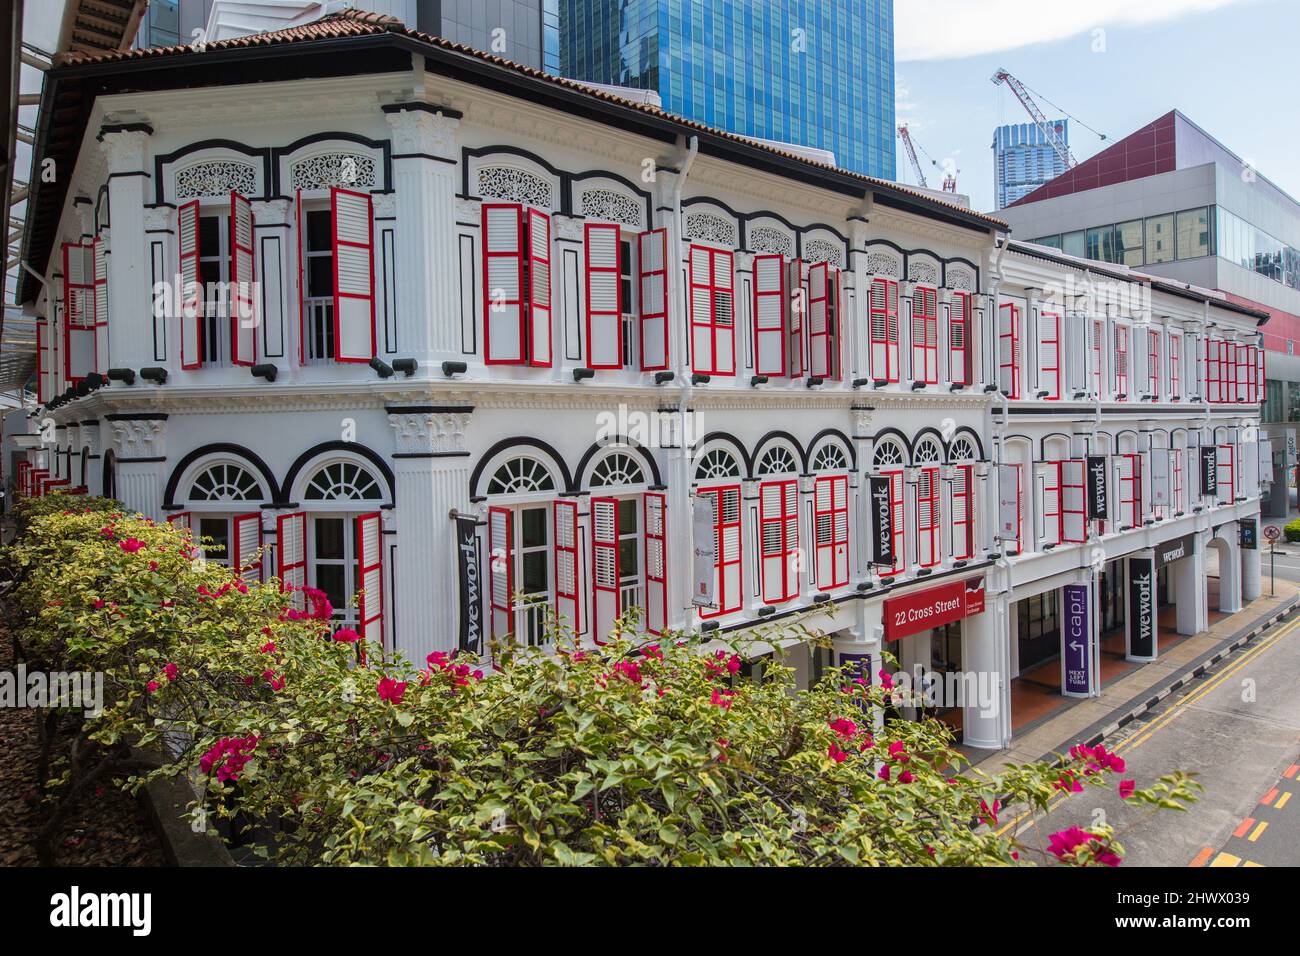 Les vieilles maisons d'achats ont refait leur place dans une structure commerciale pour les affaires. Chinatown, Singapour. Banque D'Images